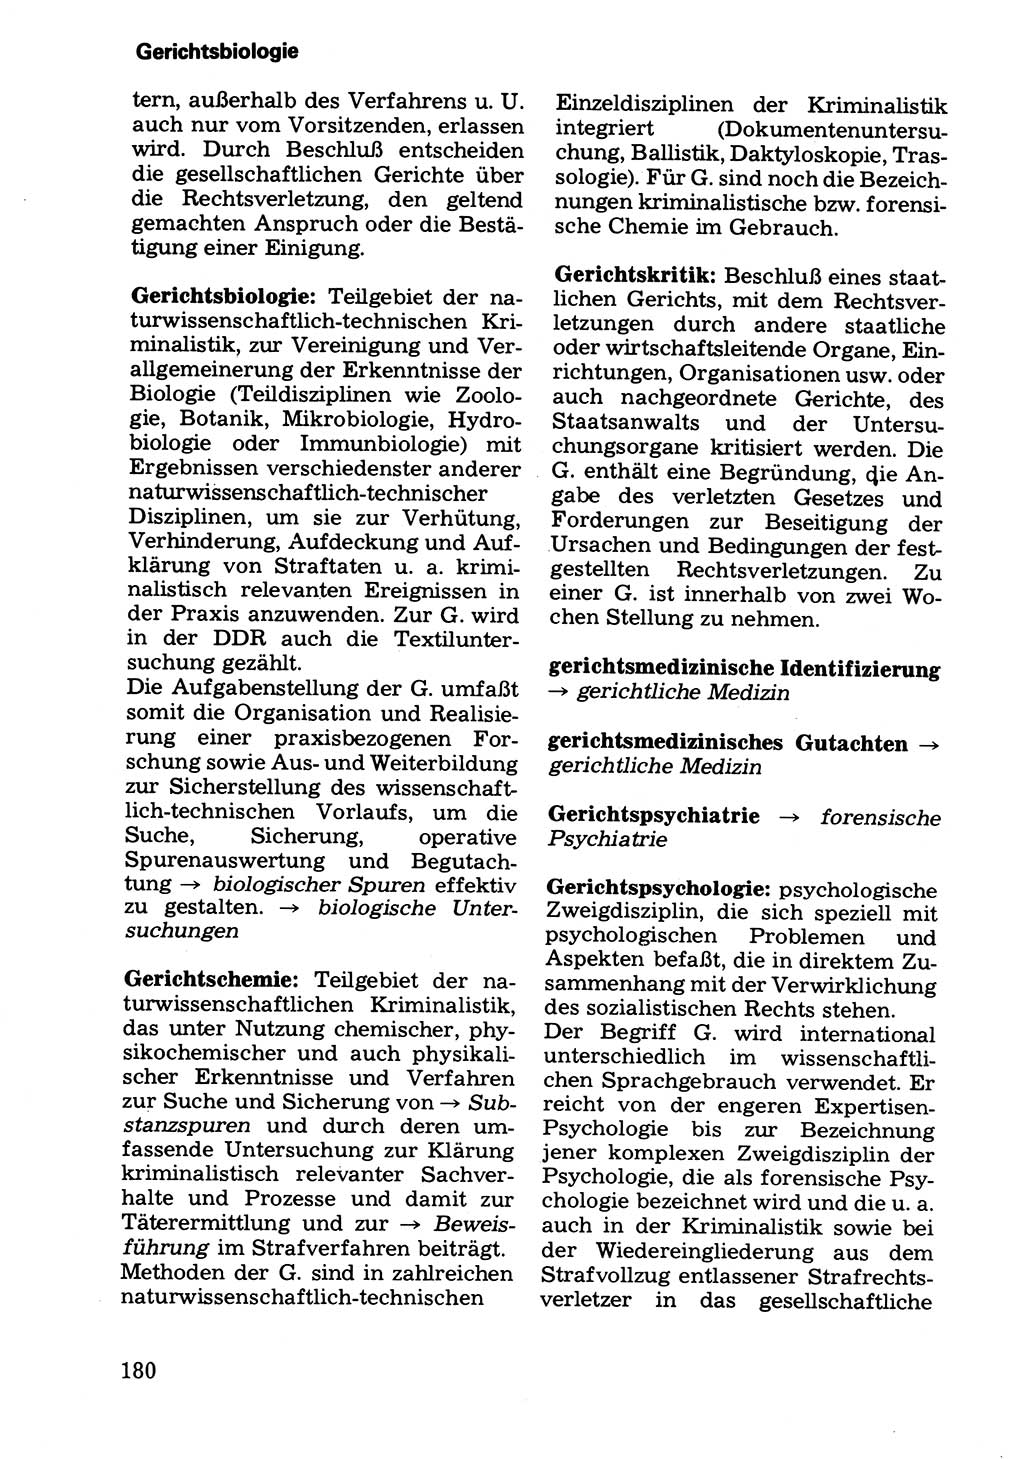 Wörterbuch der sozialistischen Kriminalistik [Deutsche Demokratische Republik (DDR)] 1981, Seite 180 (Wb. soz. Krim. DDR 1981, S. 180)